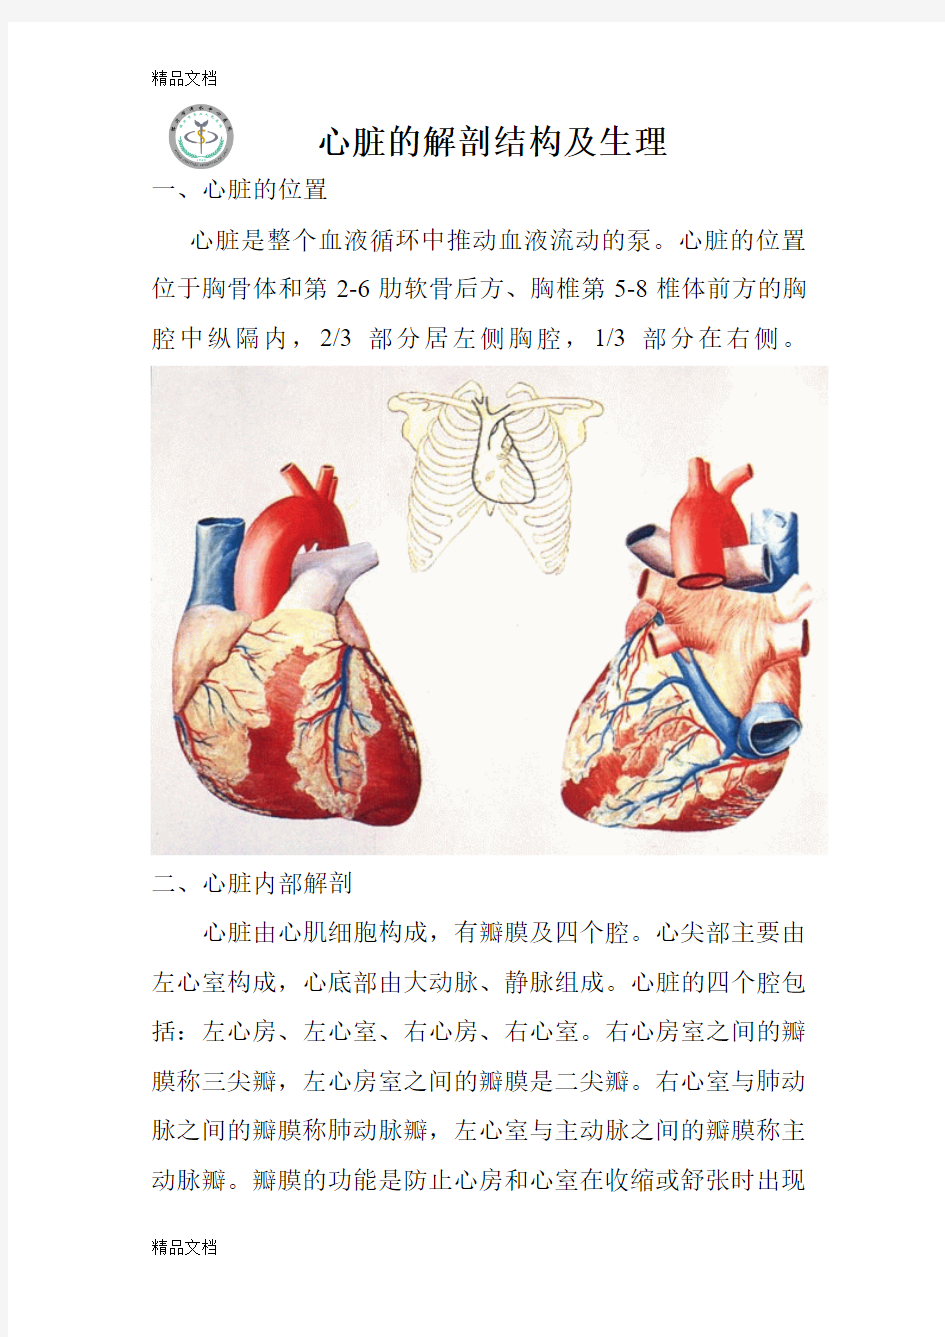 最新心脏的解剖结构及生理(含彩图)资料